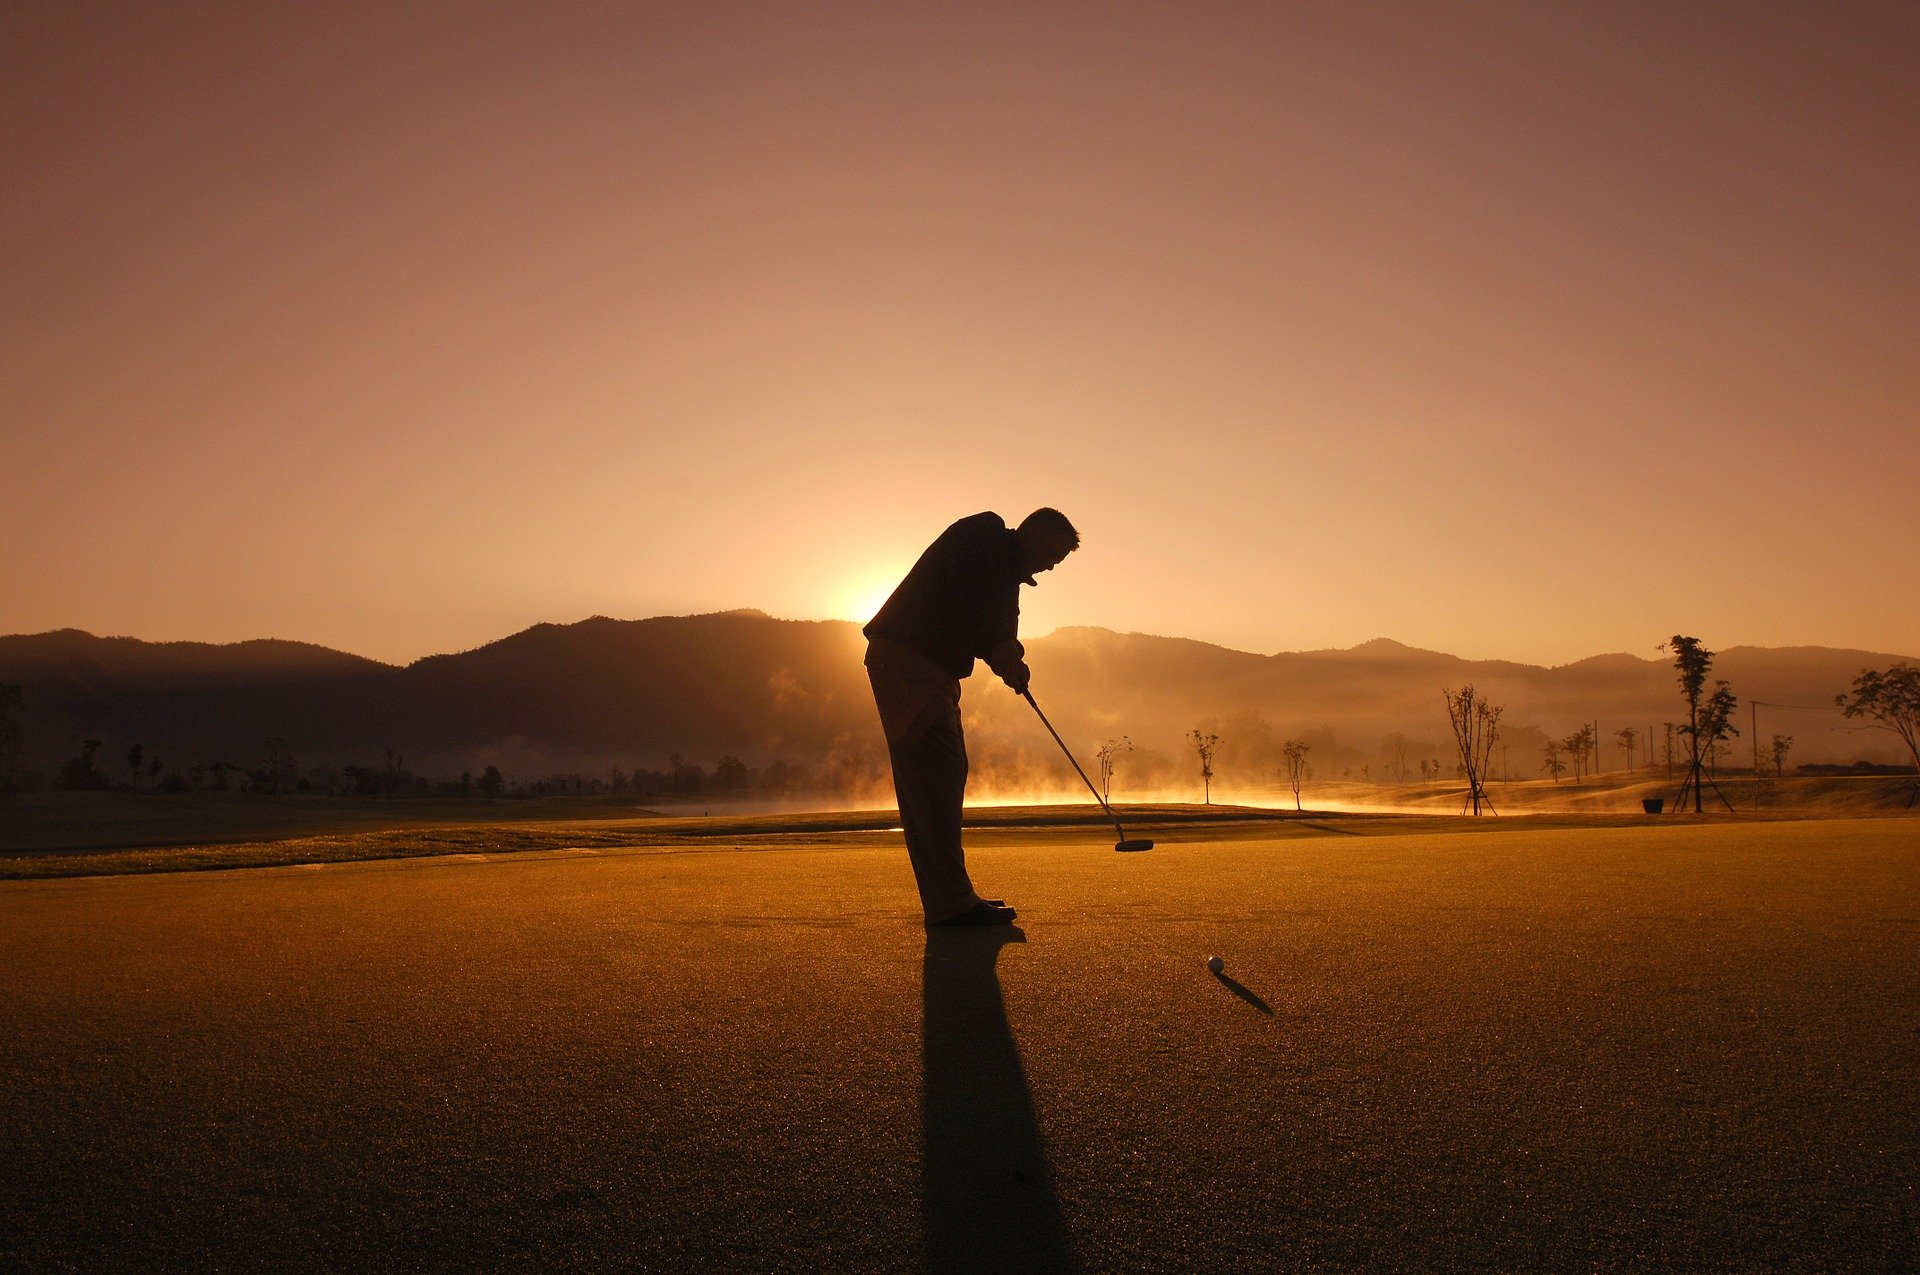 A man playing golf at sunset. | Source: Pixabay/tourmandarin.